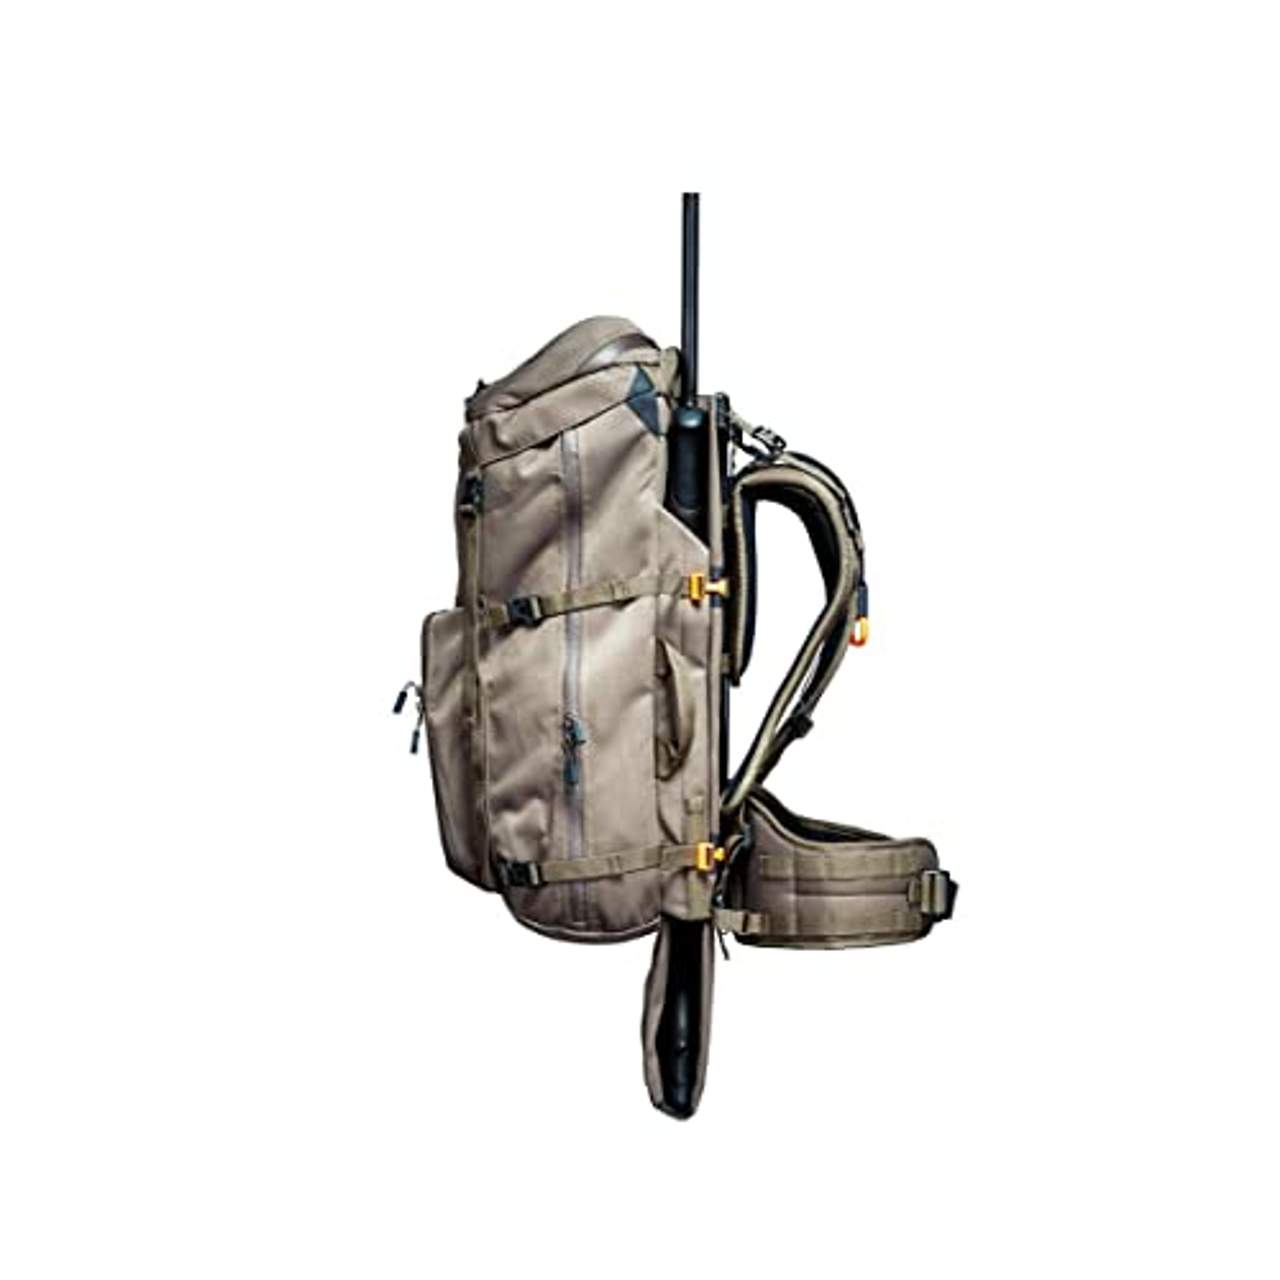 VORN EV45 Hunting backpack